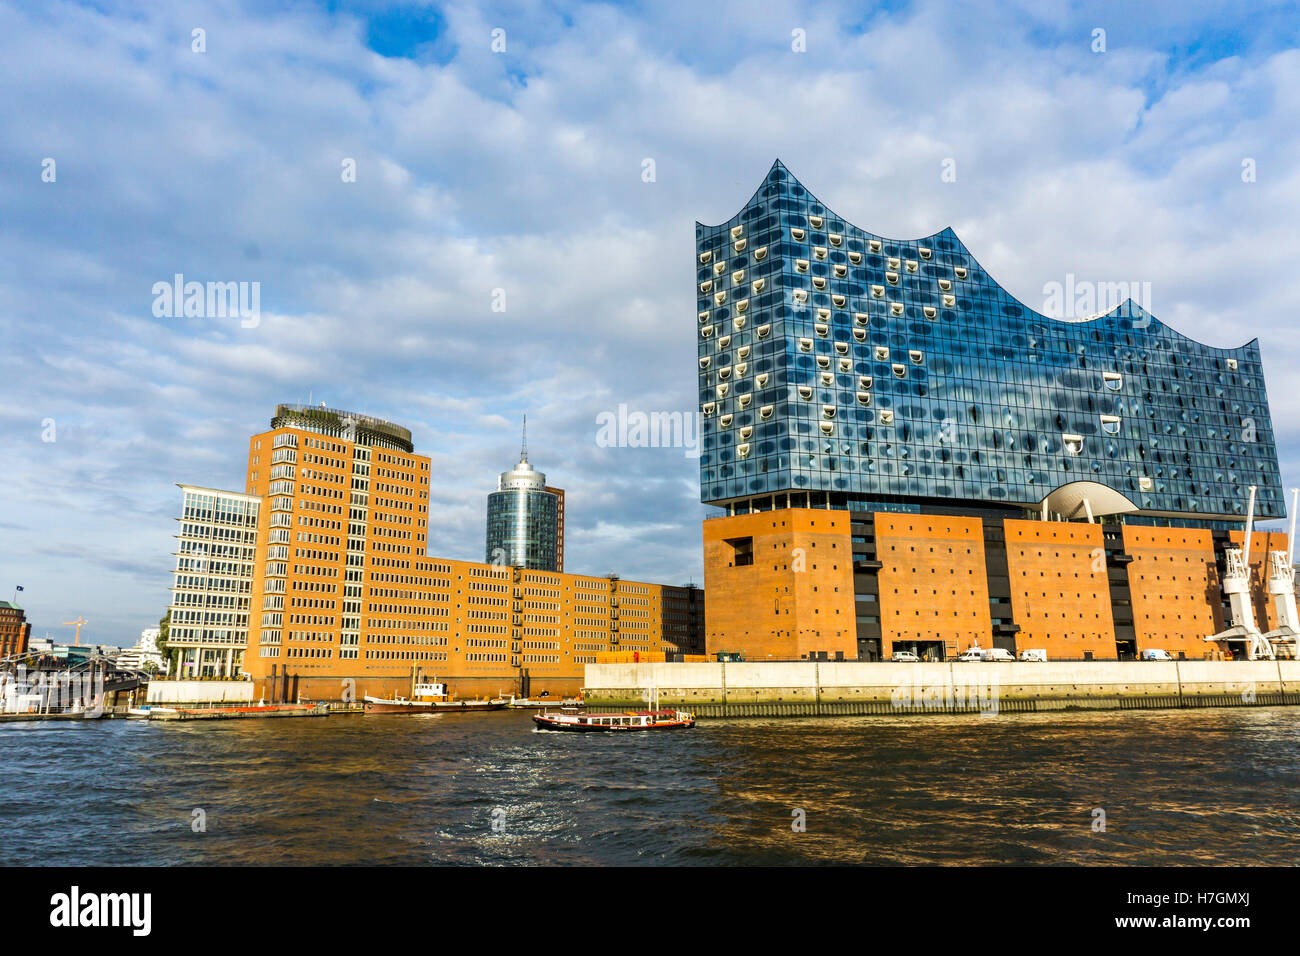 La nuova Elbphilharmonie, filarmonica, nel quartiere di Hafencity, presso il fiume Elba ad Amburgo, Germania Foto Stock